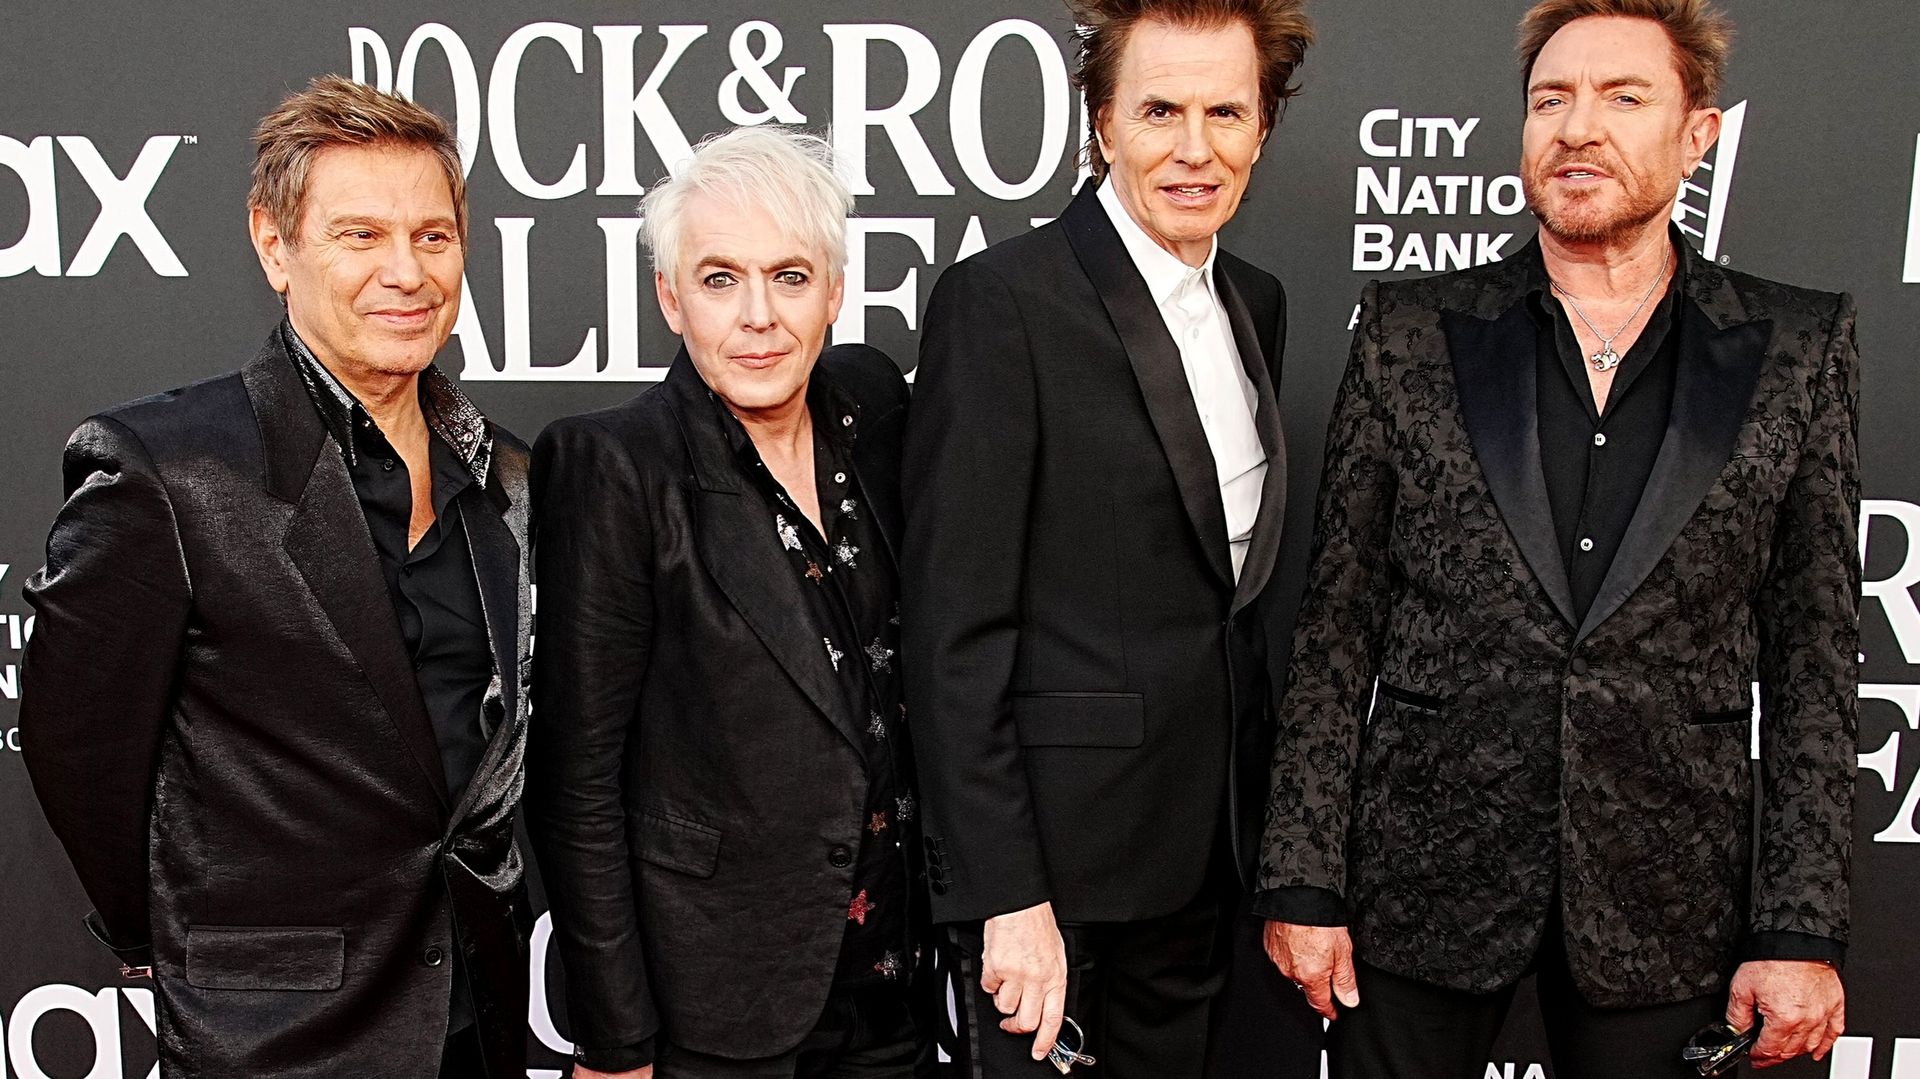 Roger Taylor, Nick Rhodes, John Taylor et Simon Le Bon de Duran Duran au Rock & Roll Hall Of Fame 2022